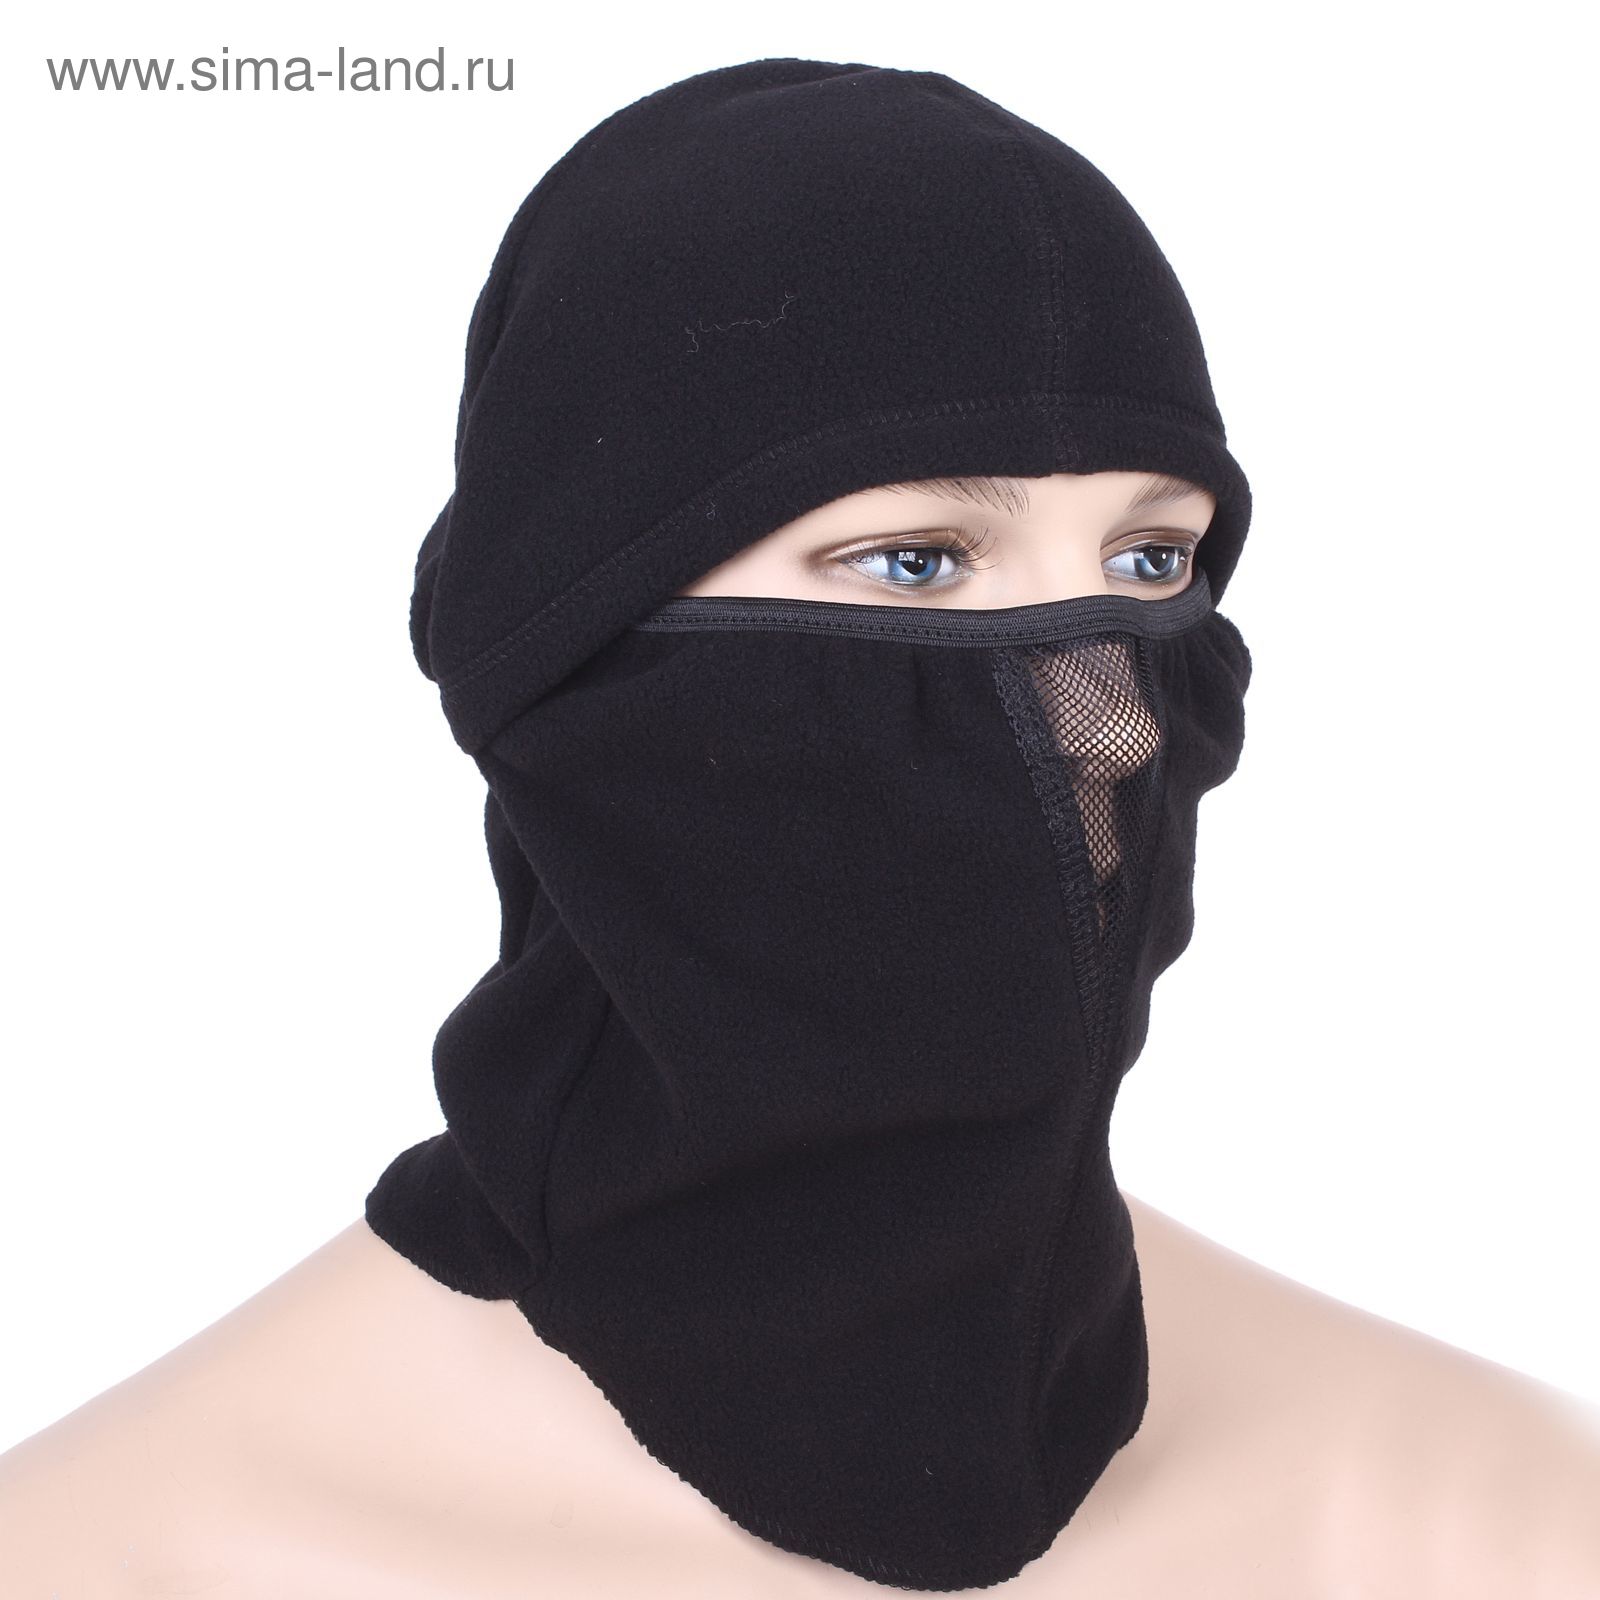 Шапка-маска "Балаклава" цвет чёрный